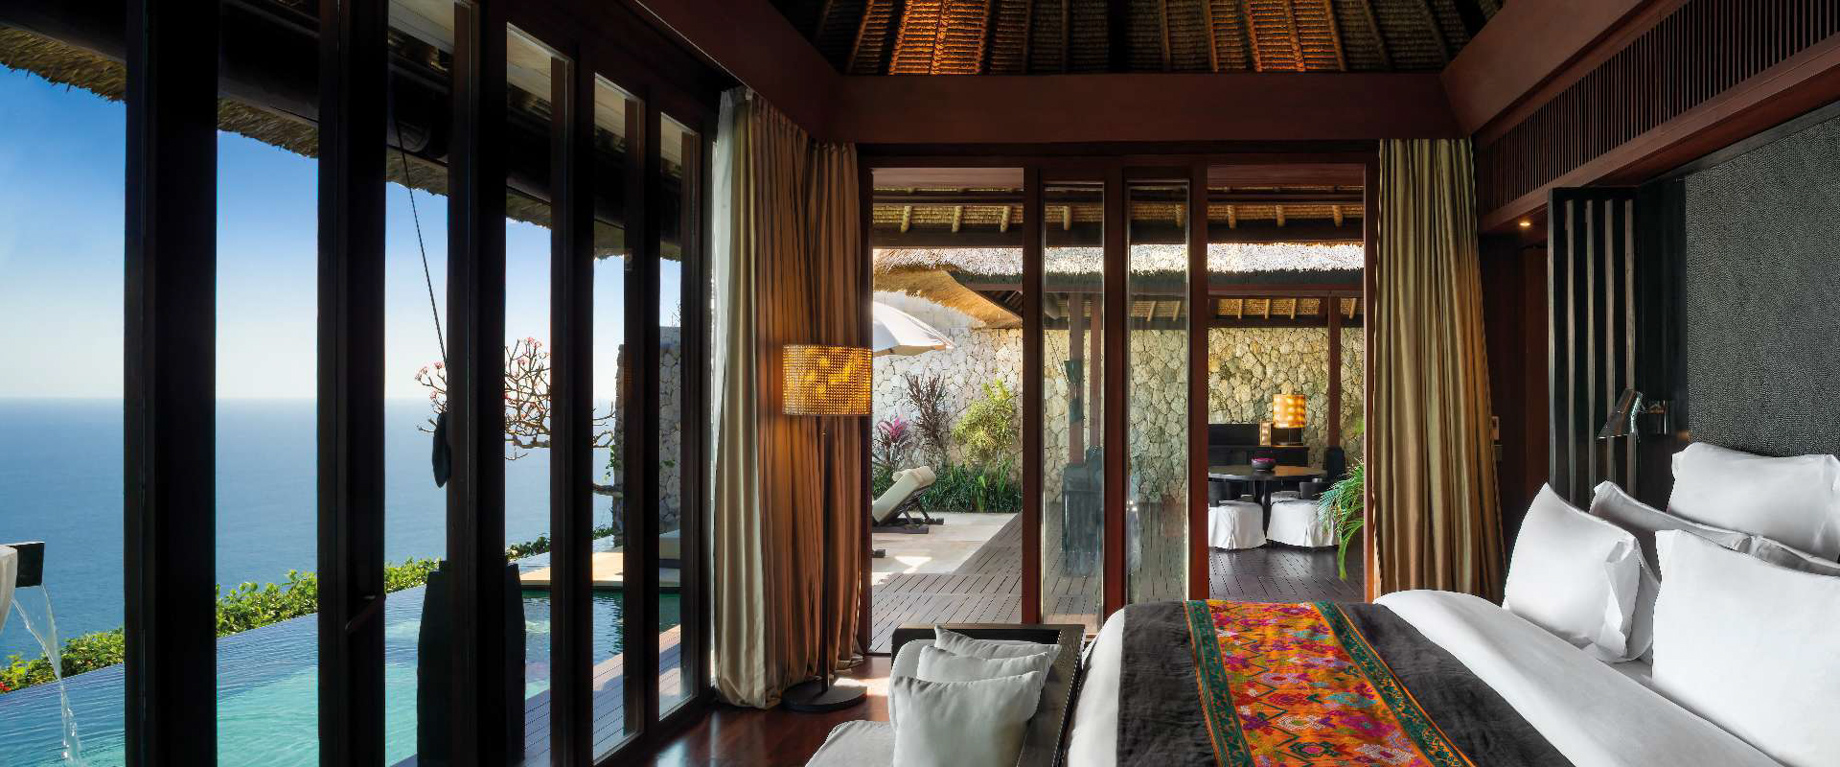 Bvlgari Resort Bali – Uluwatu, Bali, Indonesia – Ocean Cliff Villa Bedroom Ocean View